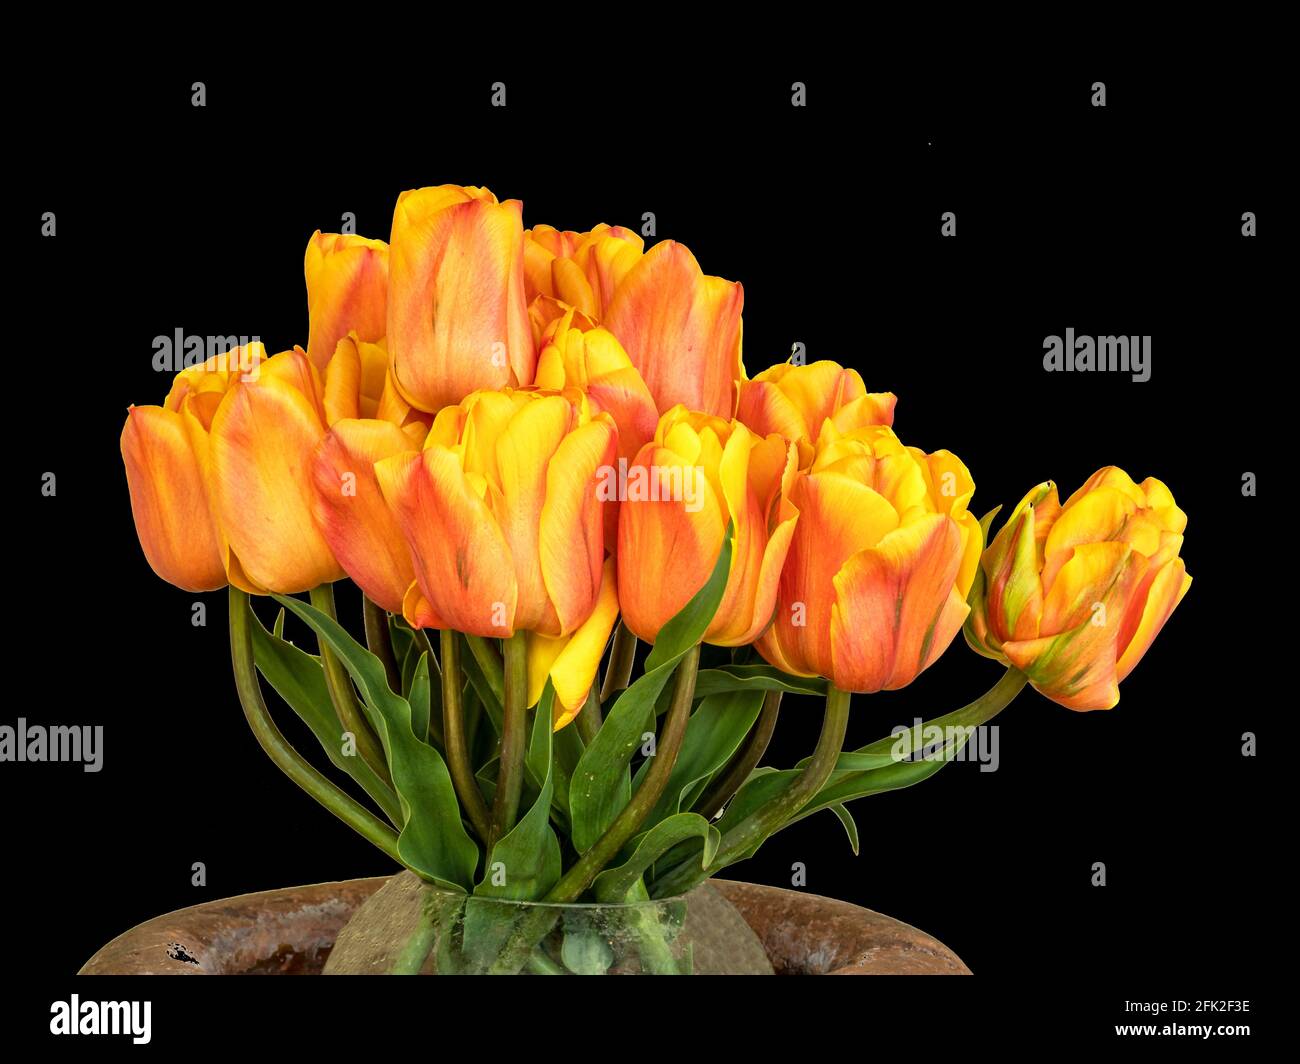 Schöne Tulpenarrangements mit einem schlichten schwarzen Hintergrund Stockfoto